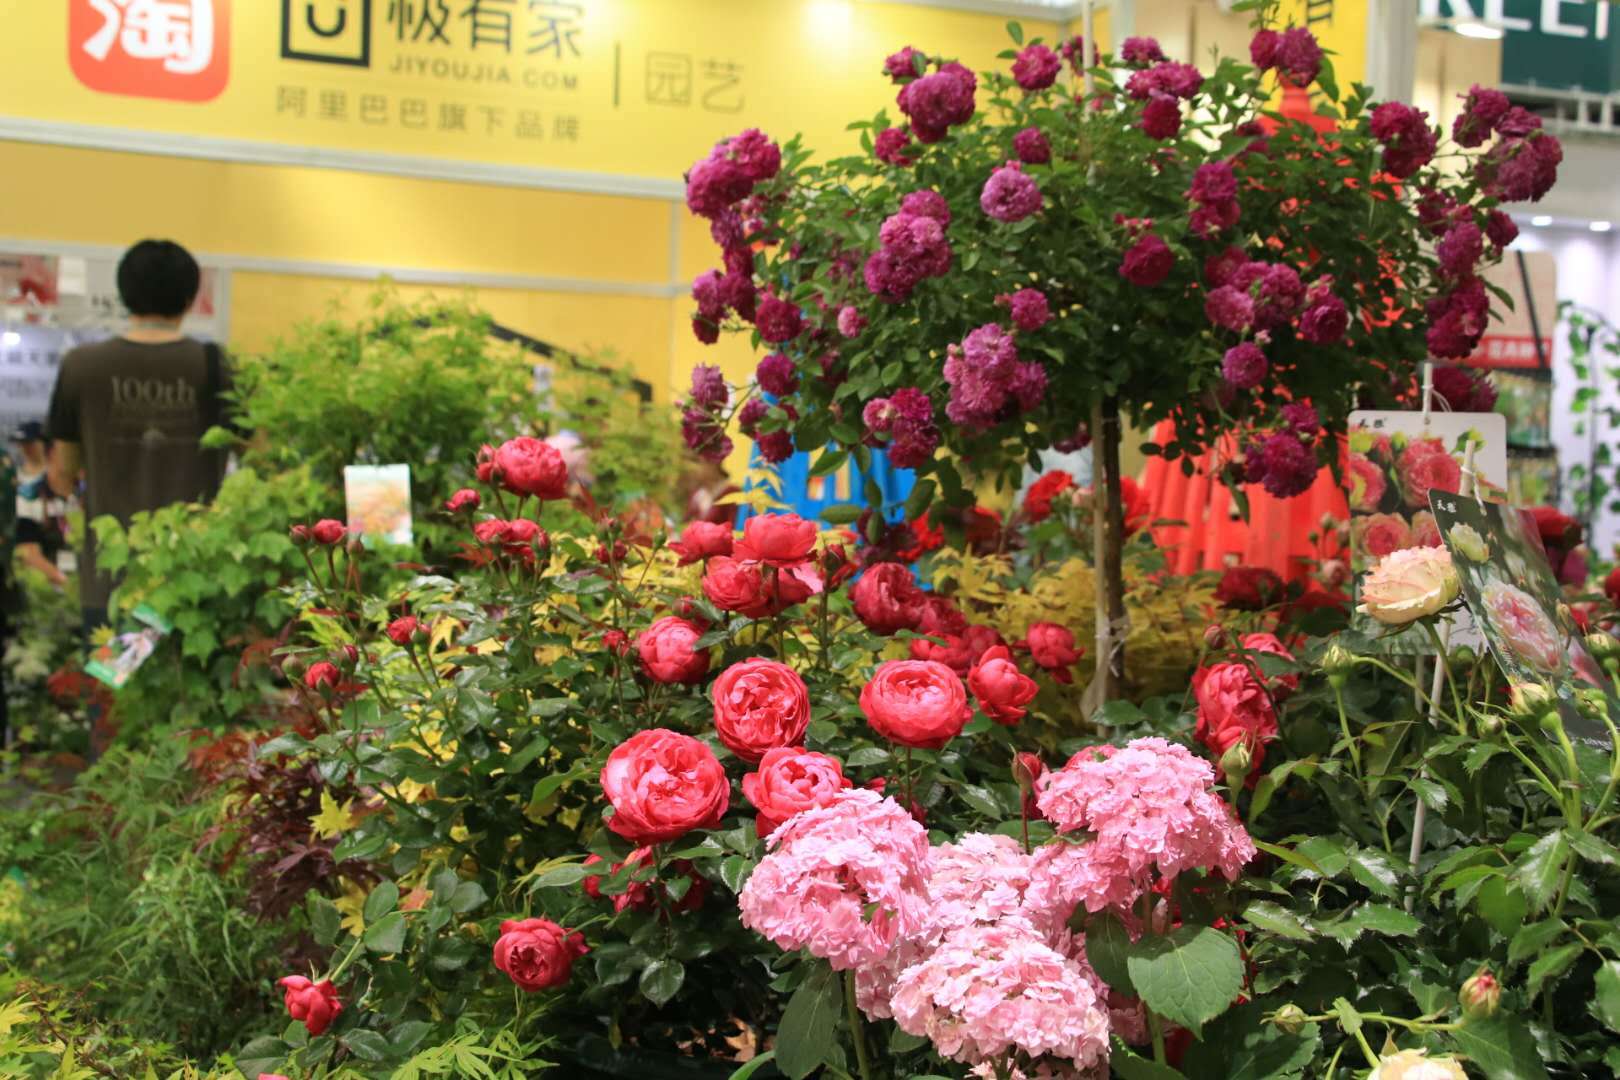 北京国际花卉展的第二天 给大家实时播报下前方情况